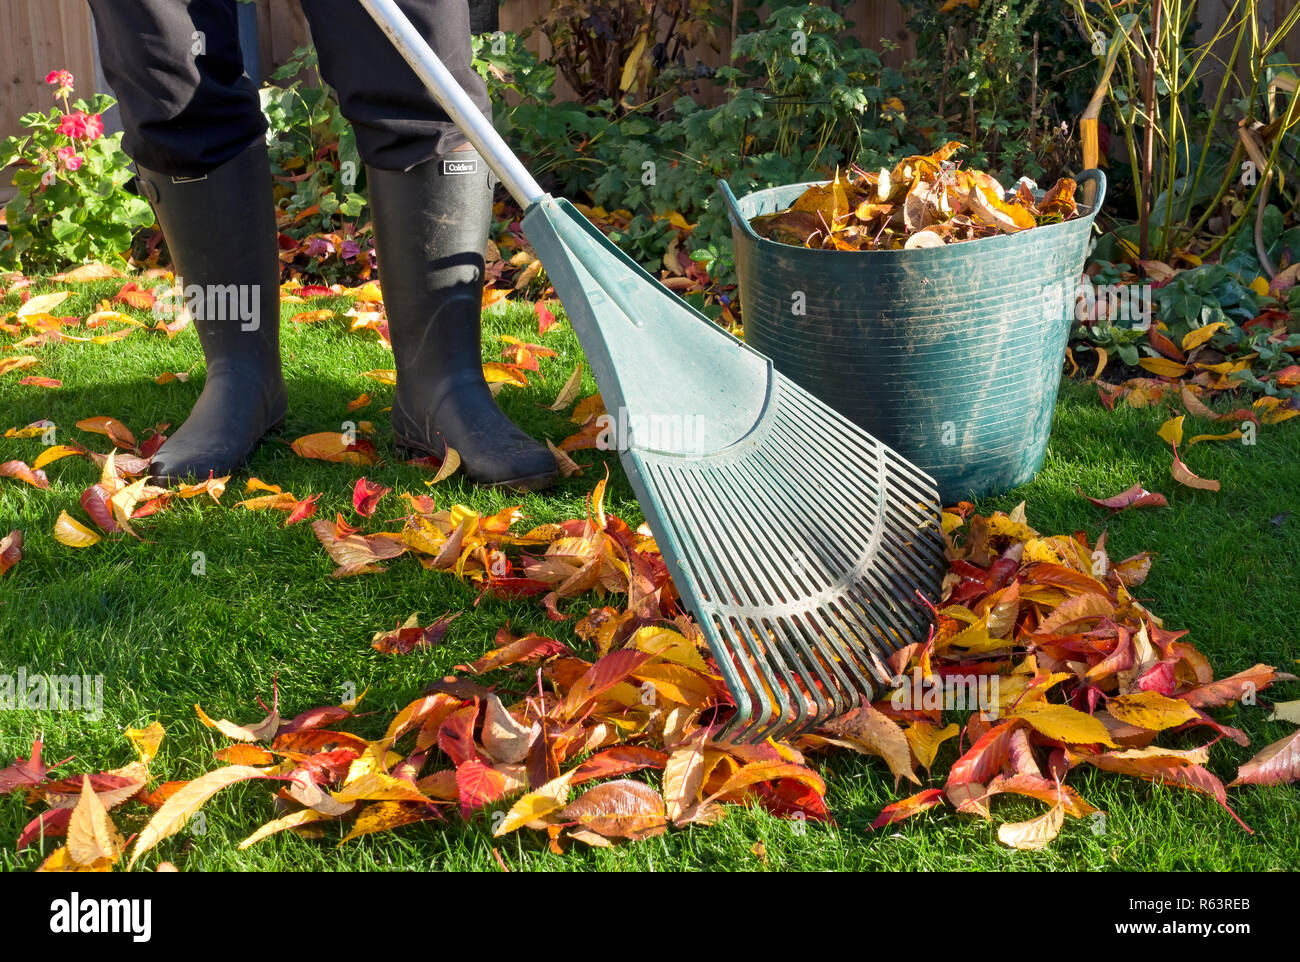 Gros plan de la personne homme jardinier homme ramasser raking balayer les feuilles mortes sur pelouse de jardin d'herbe en automne Angleterre Royaume-Uni Grande-Bretagne Banque D'Images